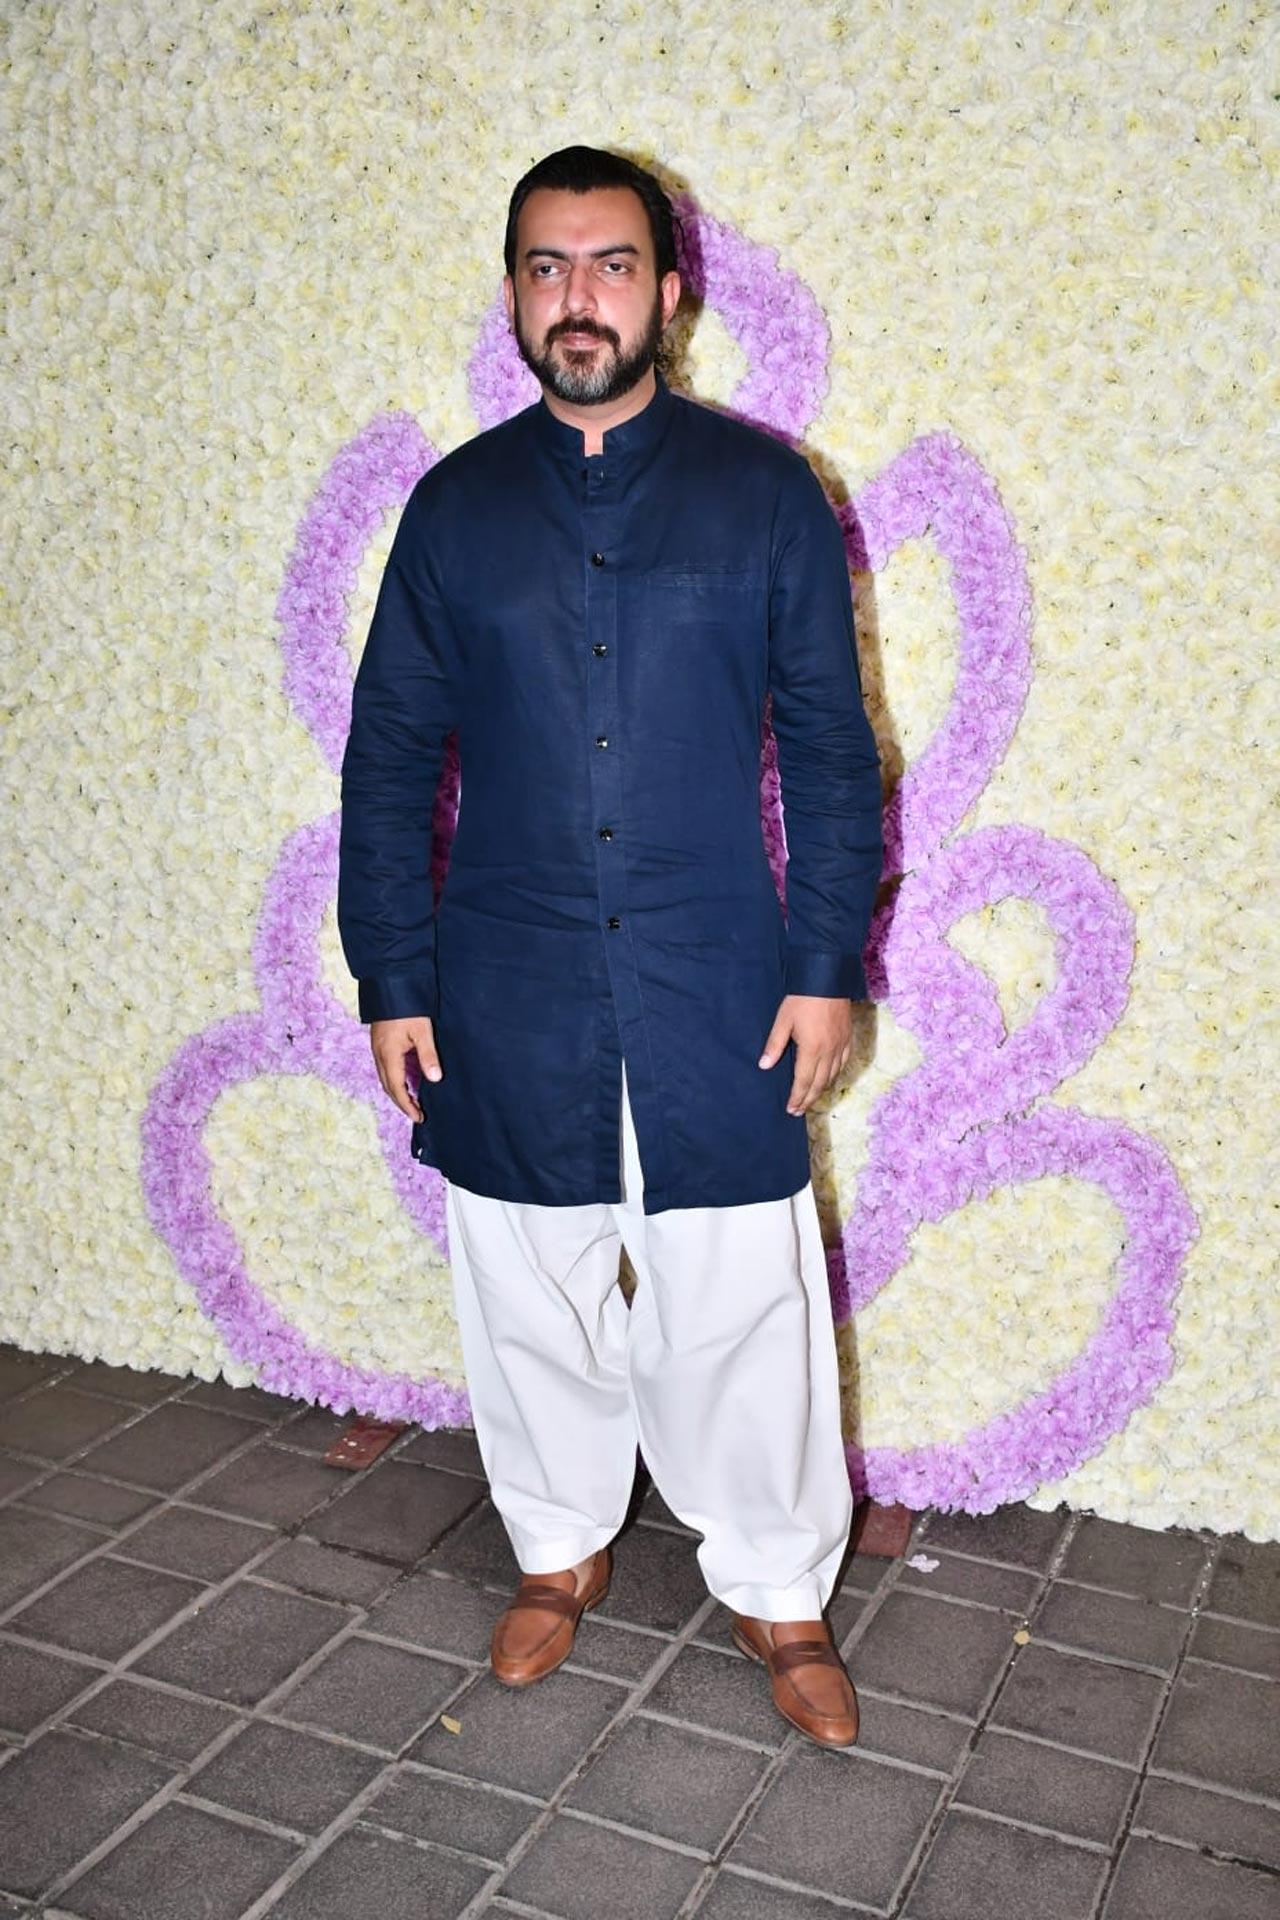 Popular Bollywood producer Sahil Sangha attended Arpita Khan Sharma's Ganpati celebration